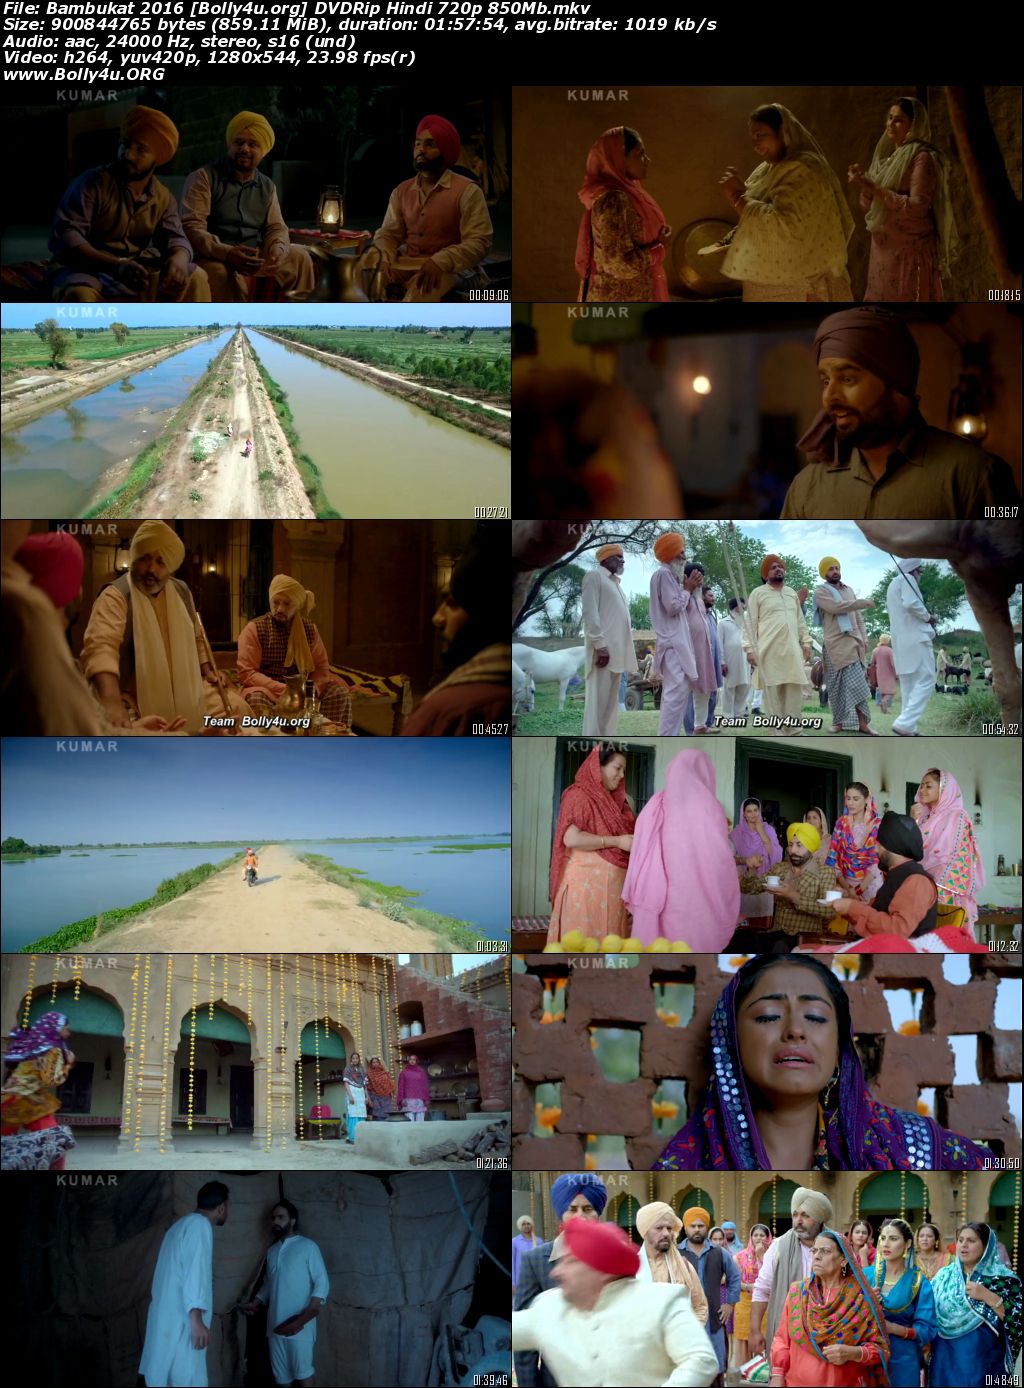 Bambukat 2016 DVDRip Punjabi Full Movie Download 720p 480p